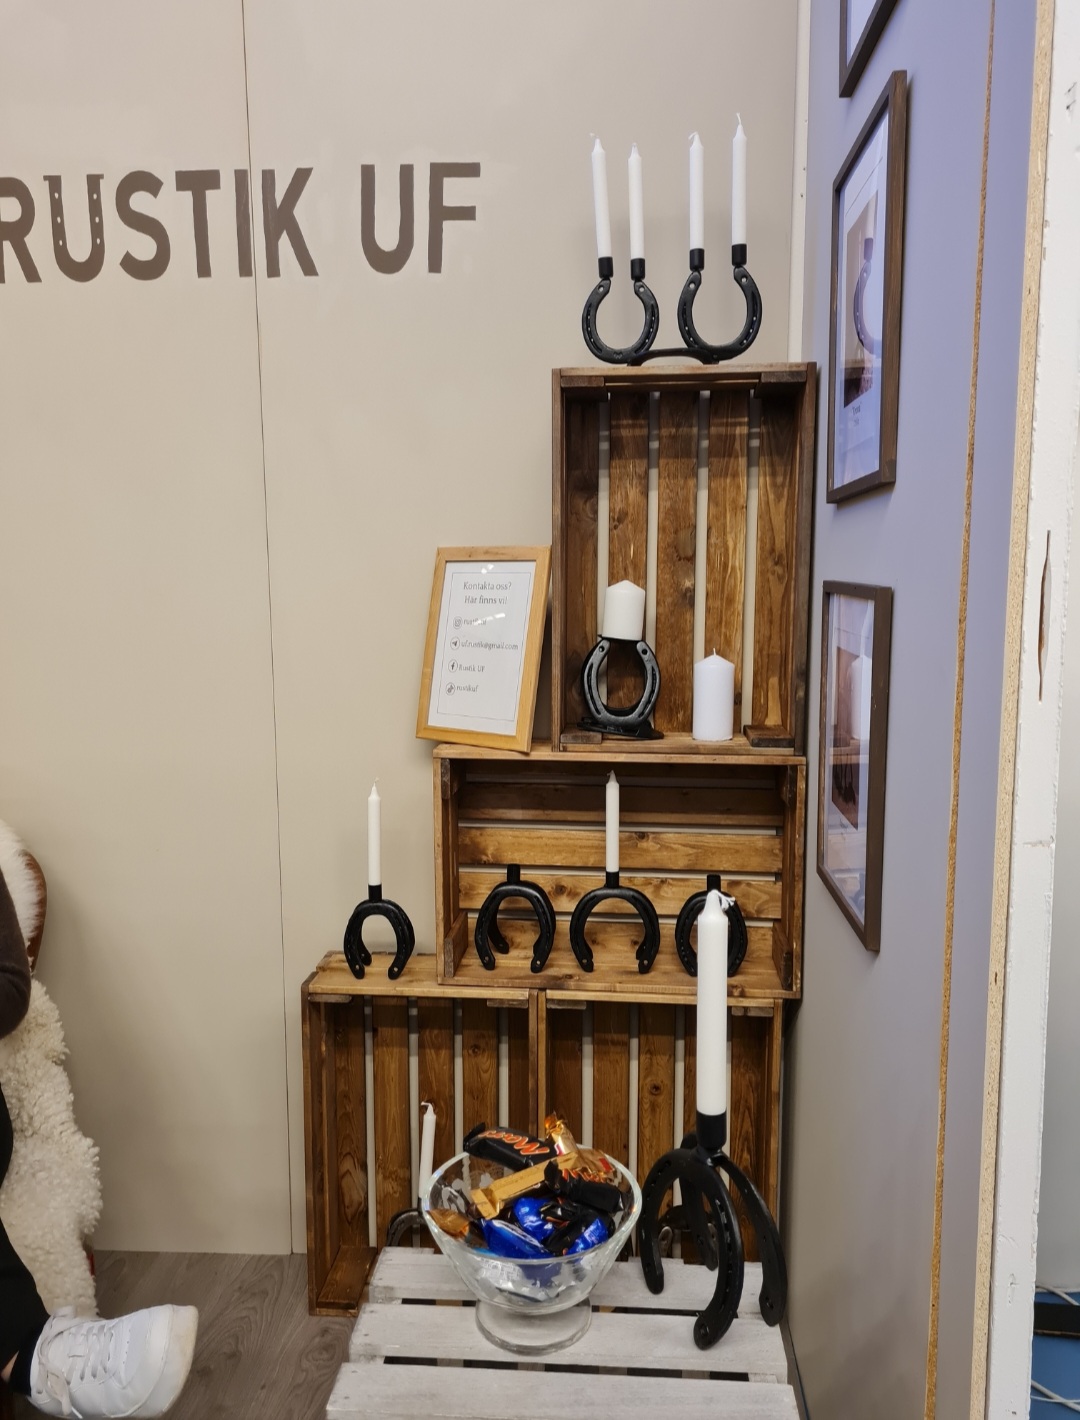 Rustik märket göra om hästskor till design från UF företag